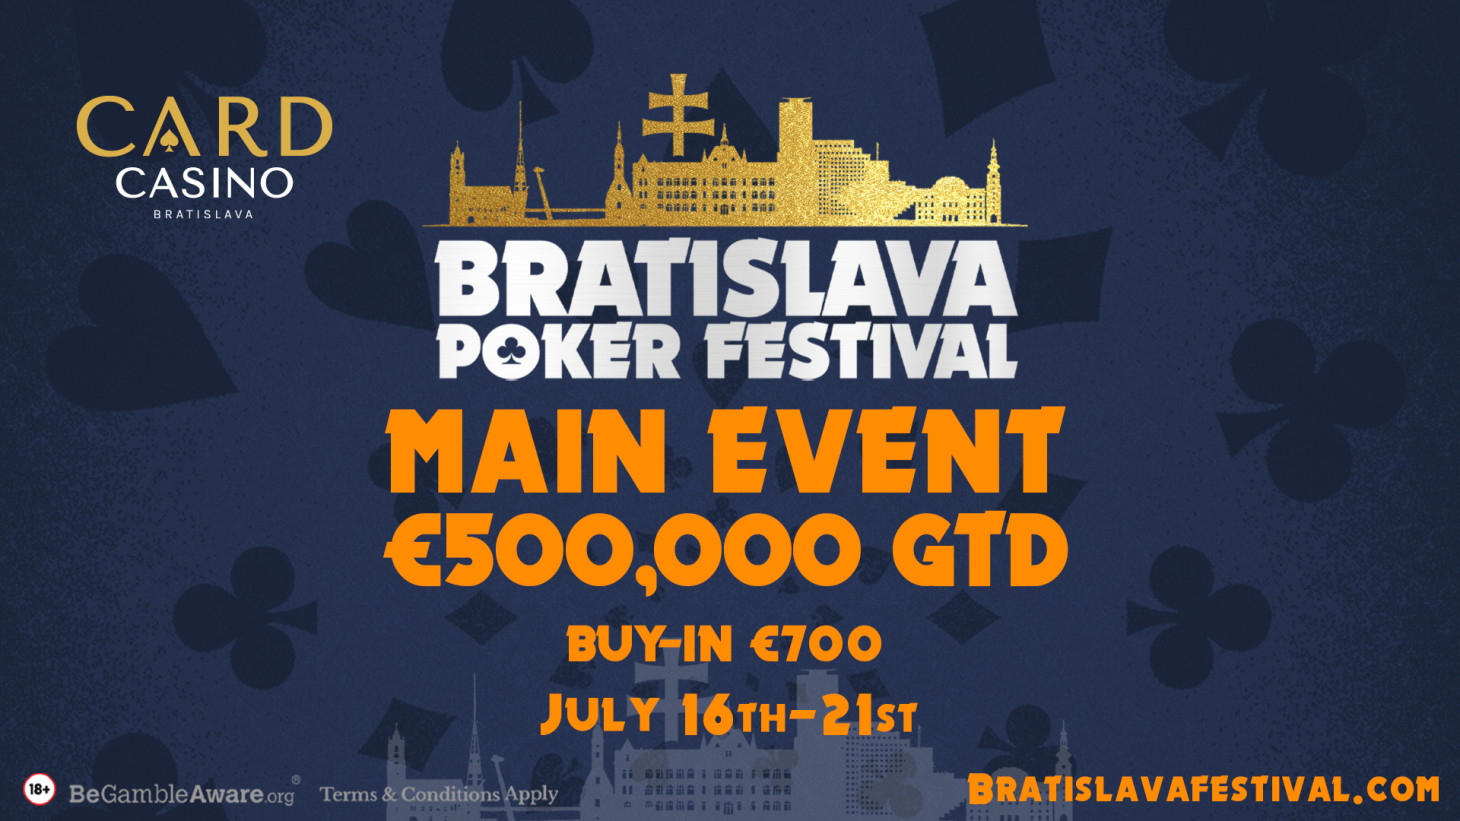 Das Bratislava Poker Festival mit €500.000 GTD Main Event wird im Juli ausgetragen!